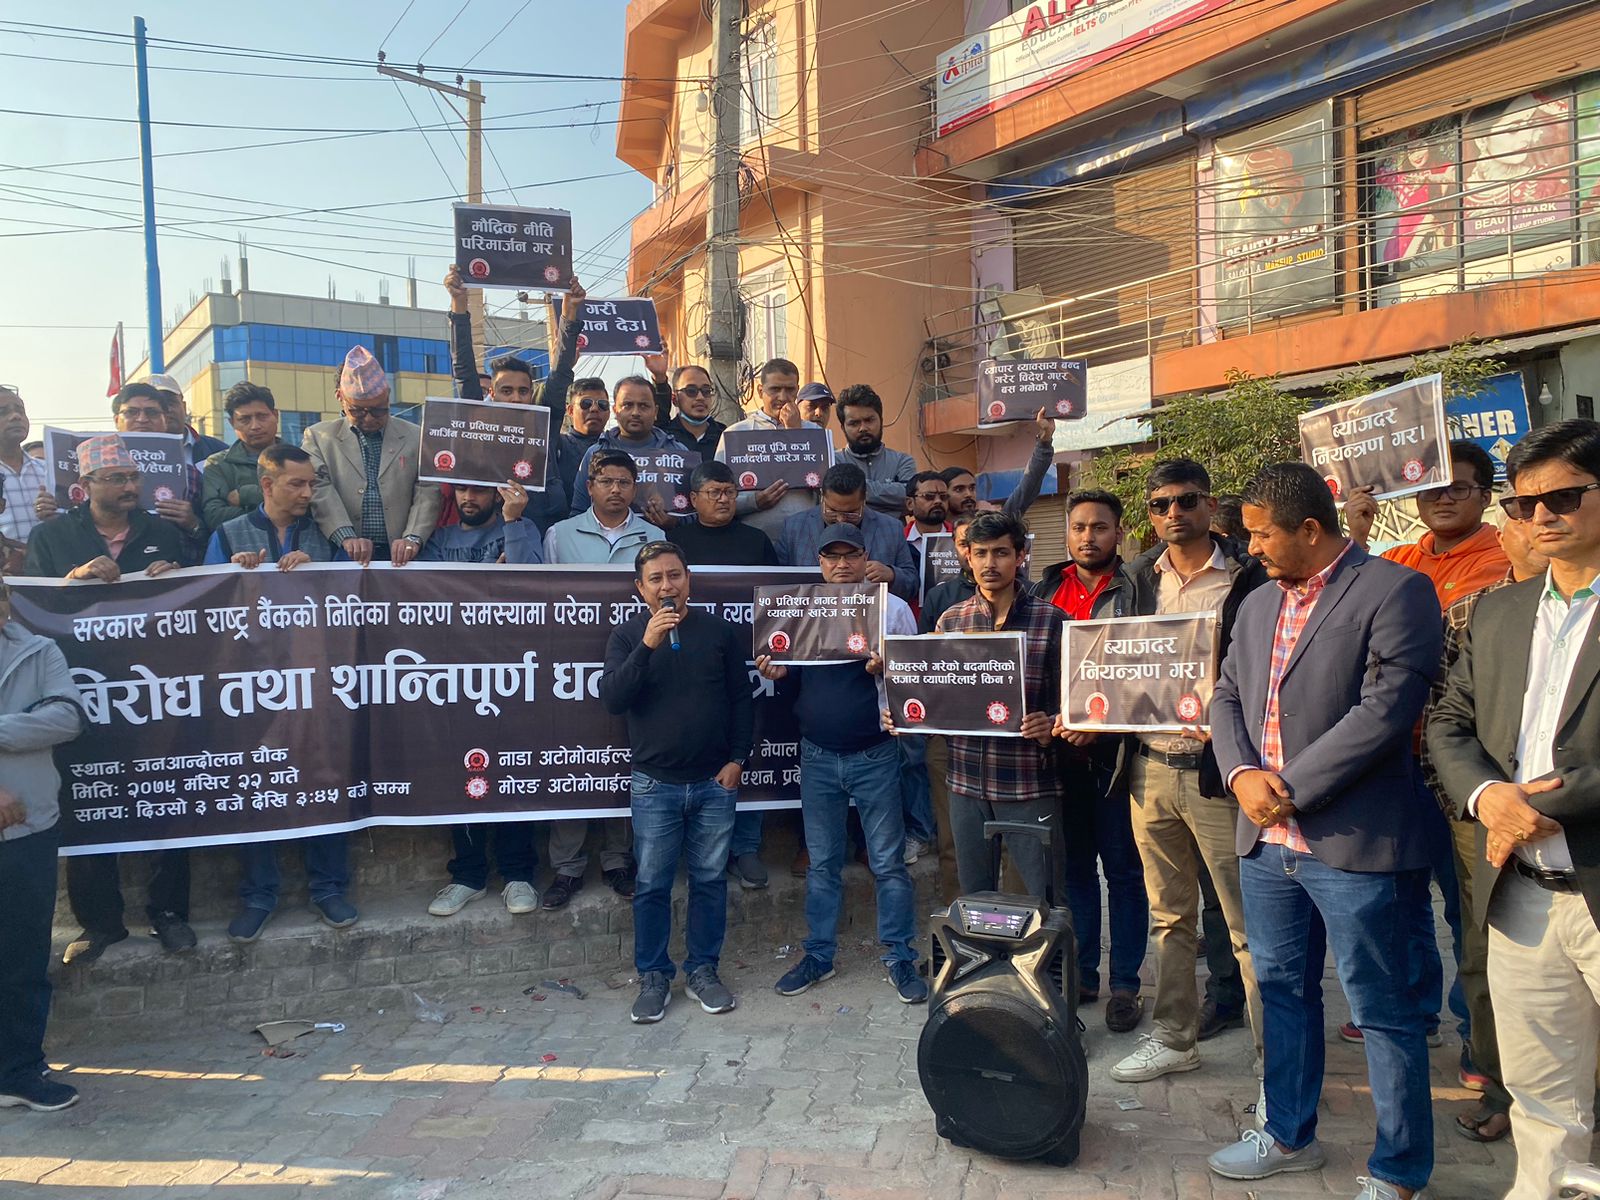 सरकार र नेपाल राष्ट्र बैंकको अमैत्रीपूर्ण नीतिहरुको विरुद्धमा बिराटनगरमा पनि विरोध प्रदर्शन